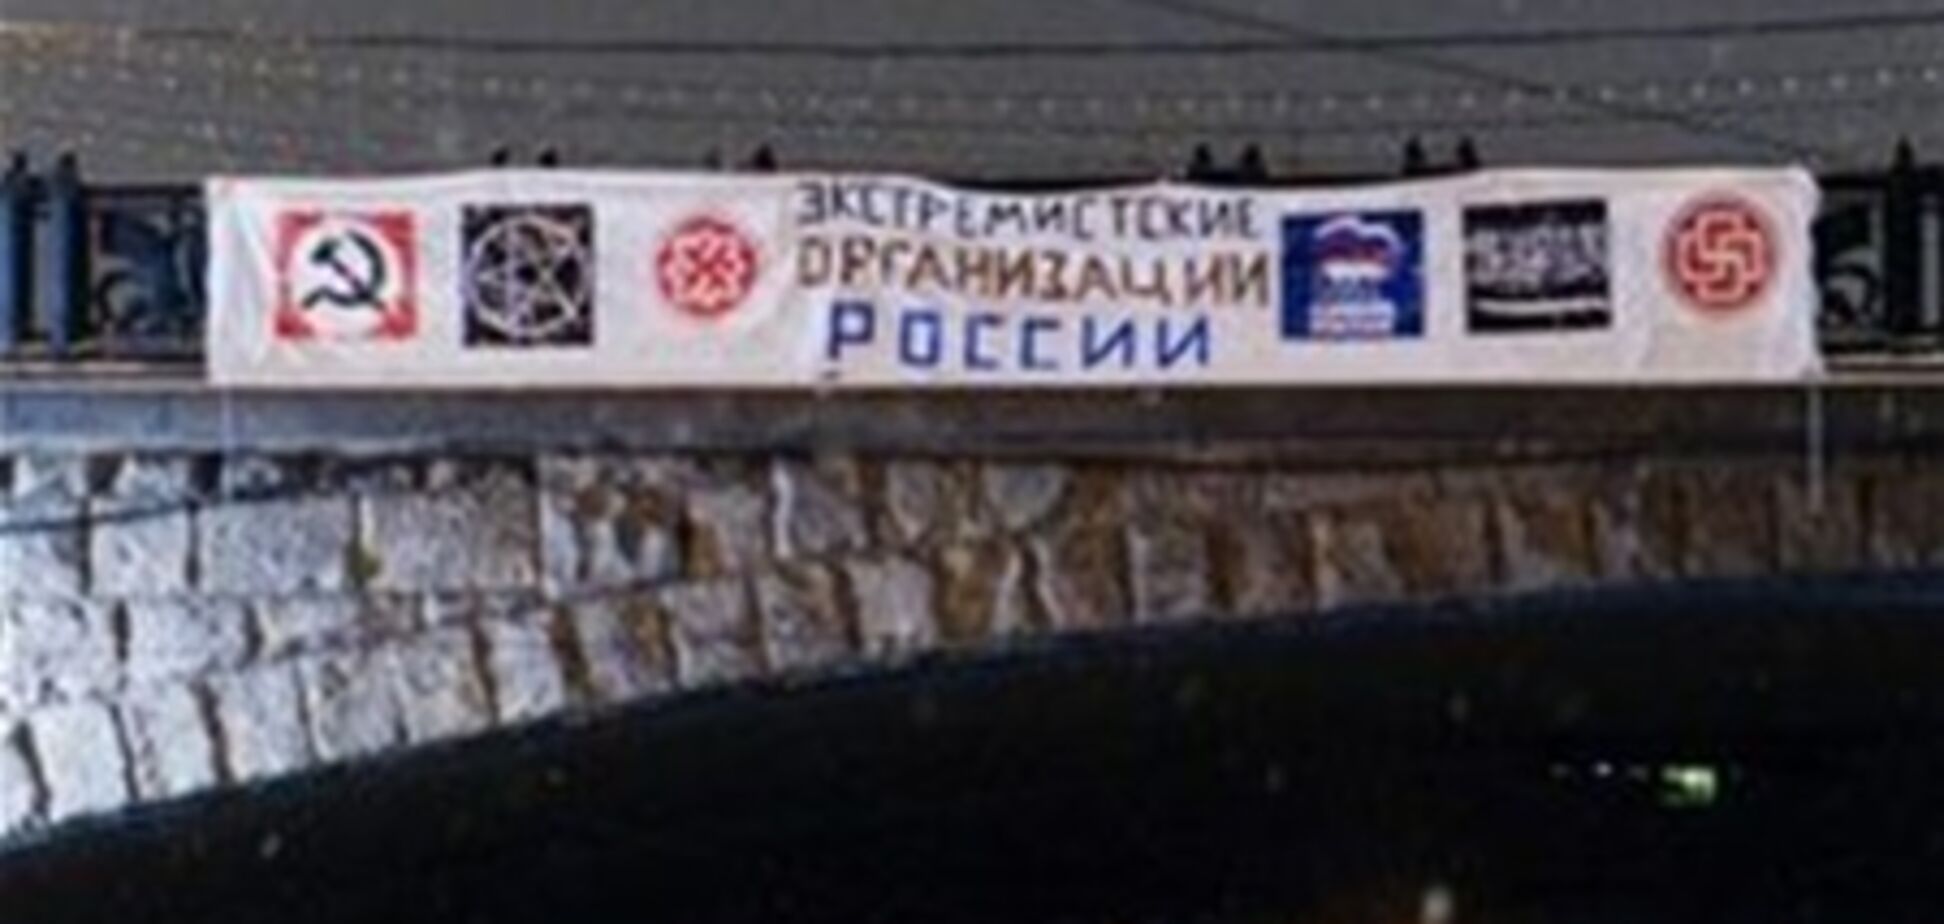 Біля Кремля виявили екстремістський банер. Фото